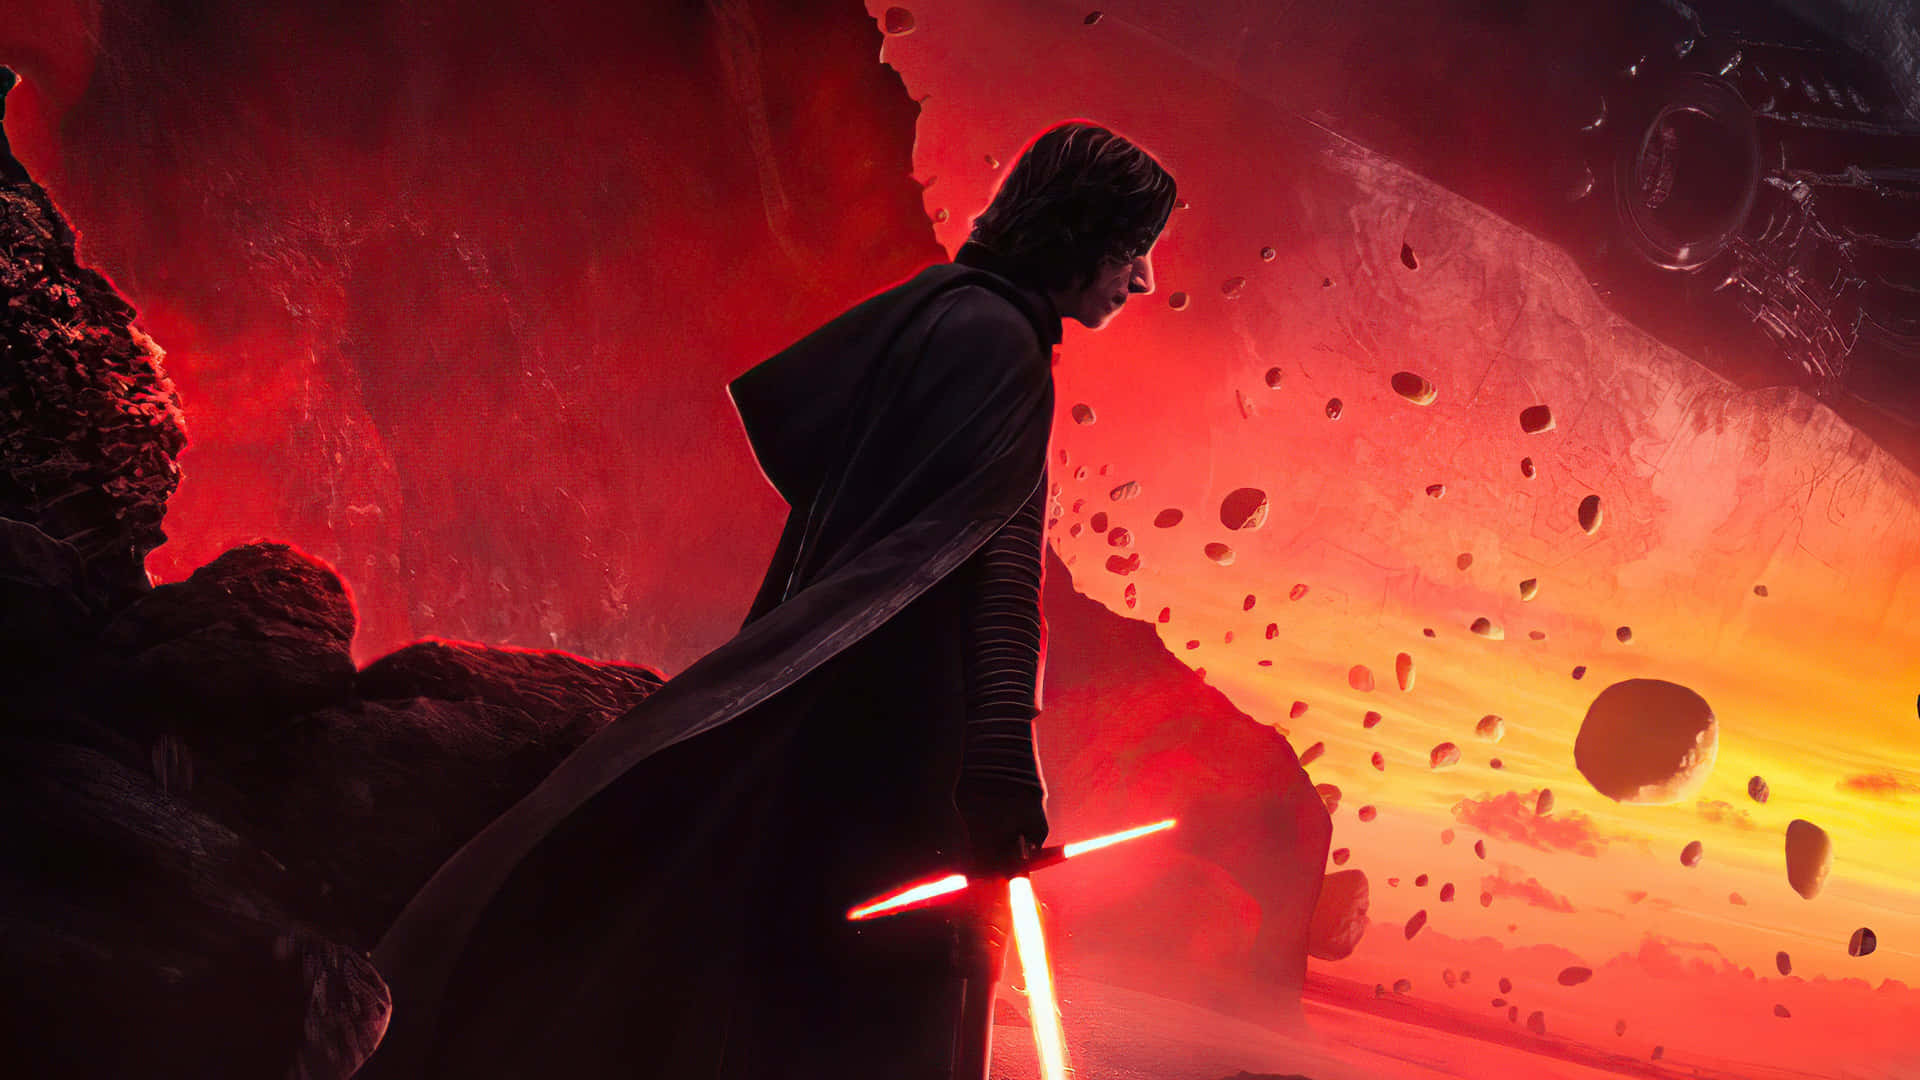 Lafigura Oscura De Kylo Ren En Star Wars: Los Últimos Jedi. Fondo de pantalla